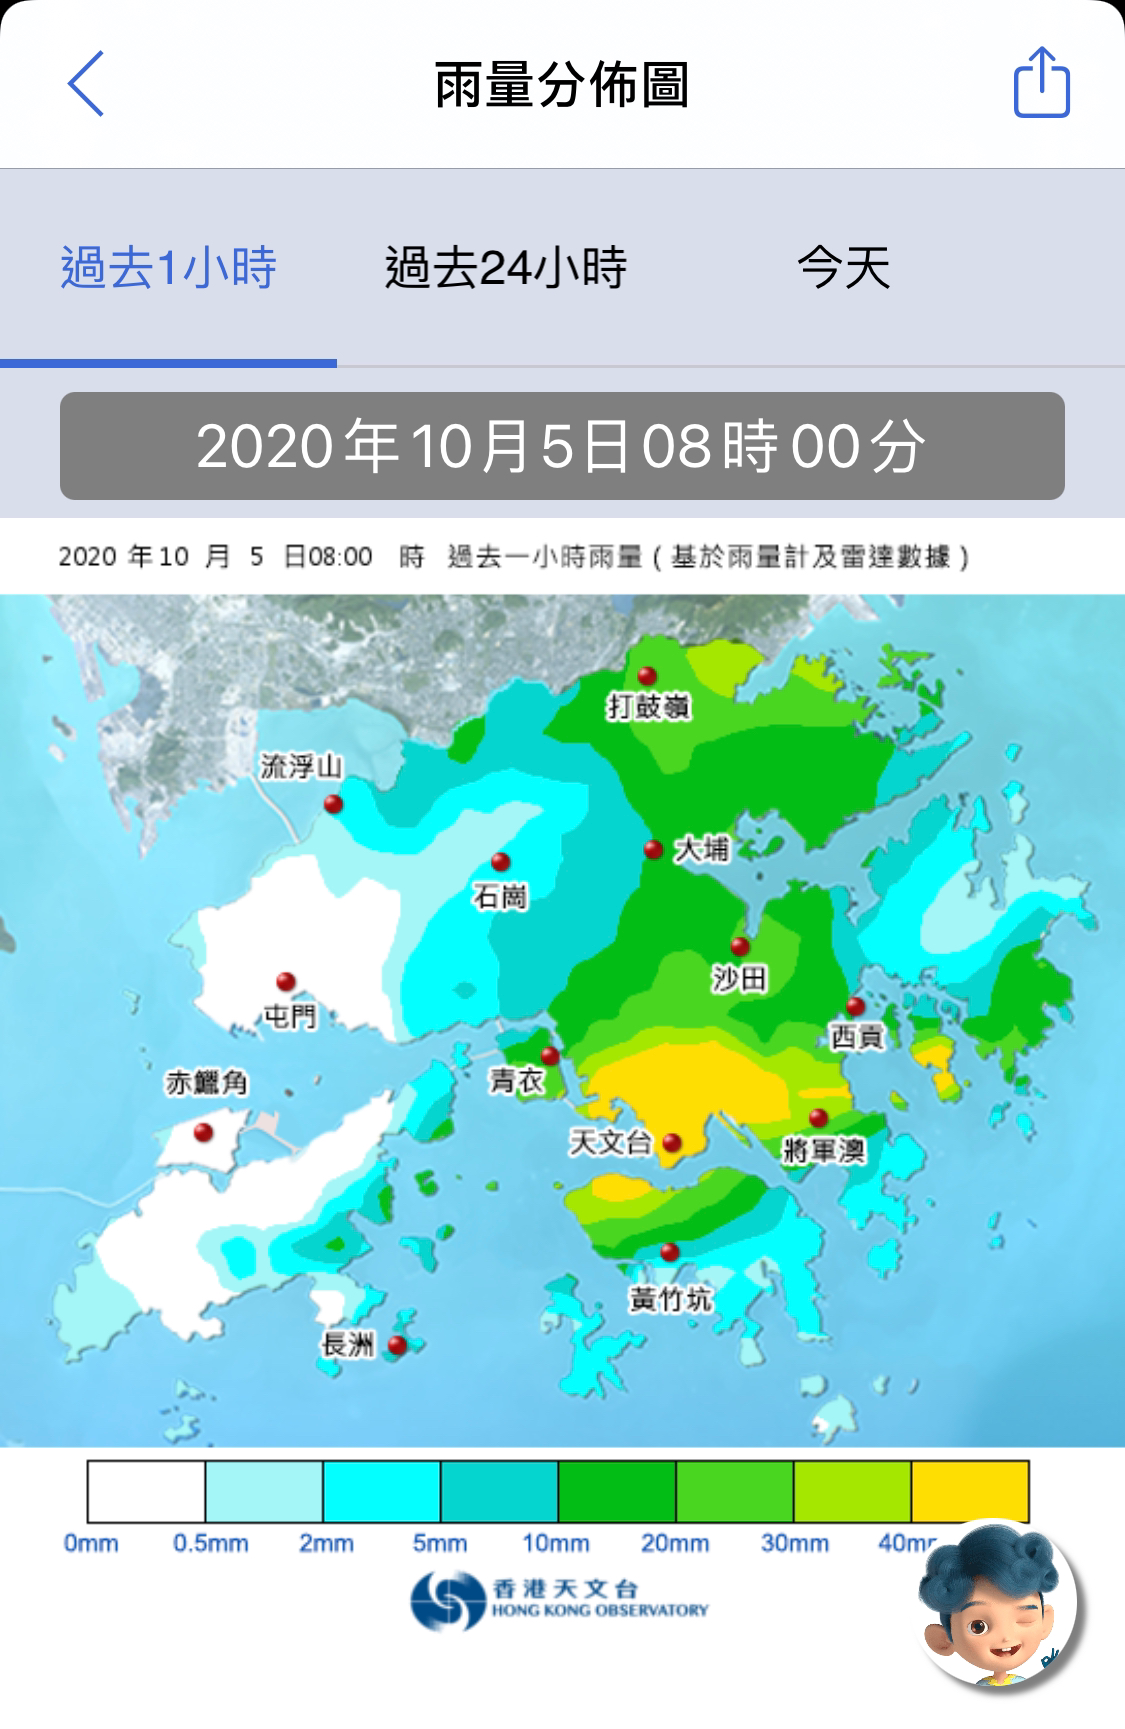 正式宣佈屯門雨量同全香港完全冇關係 Lihkg 討論區